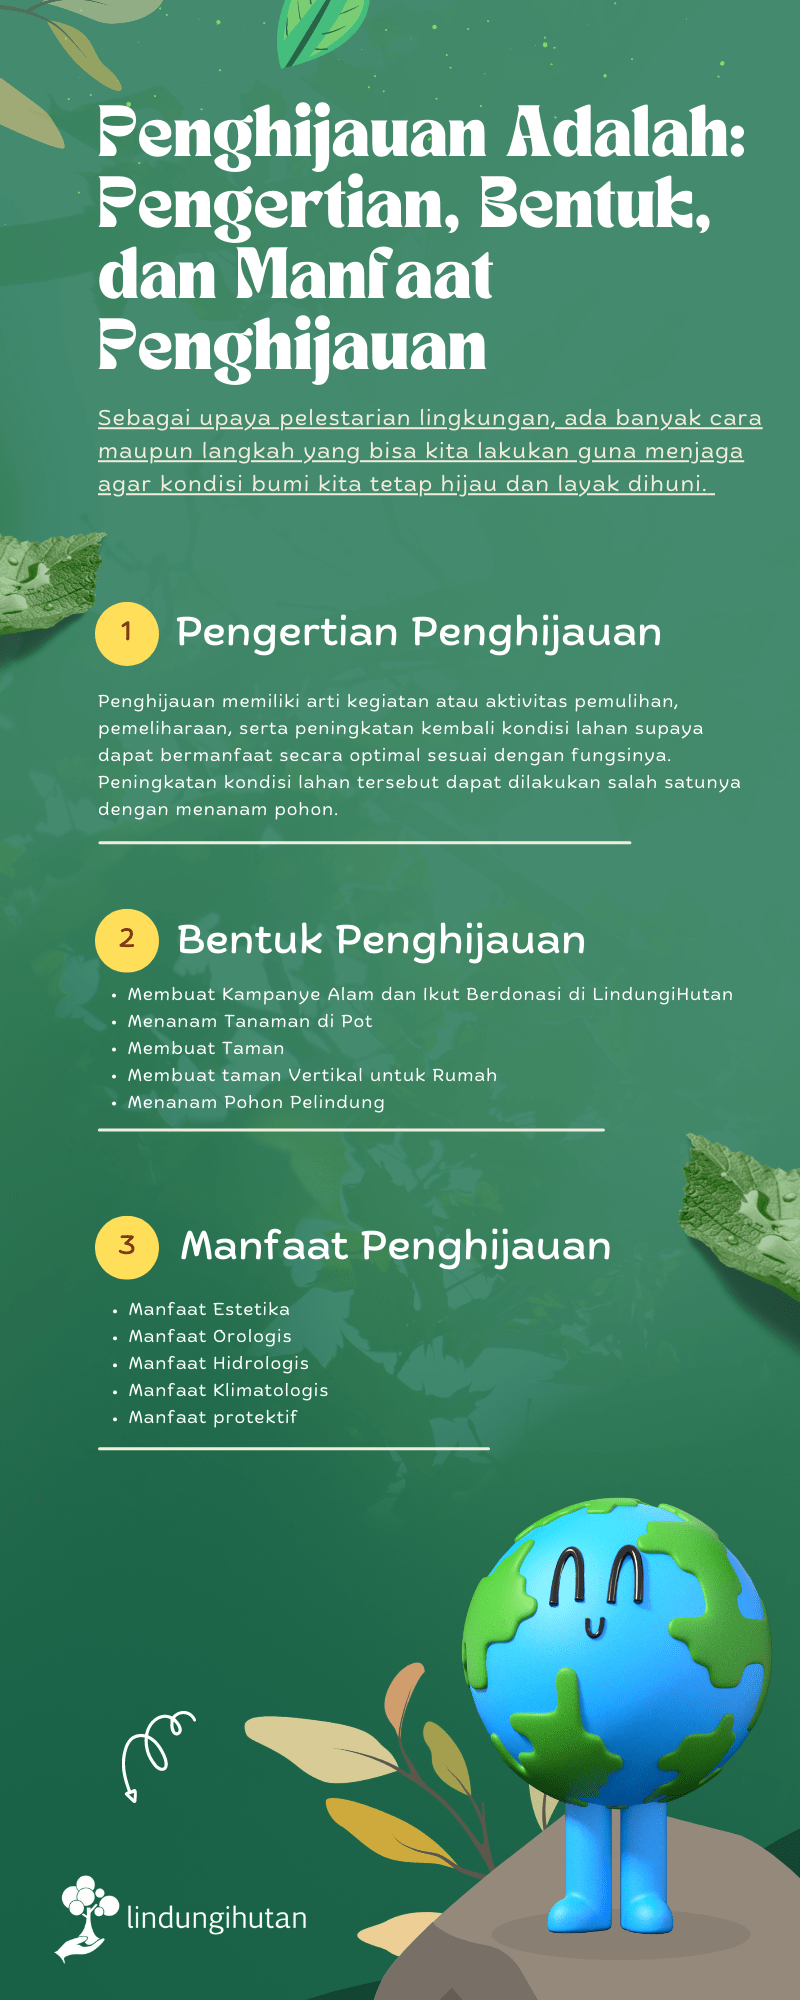 Infografis mengenai Penghijauan by LindungiHtan.